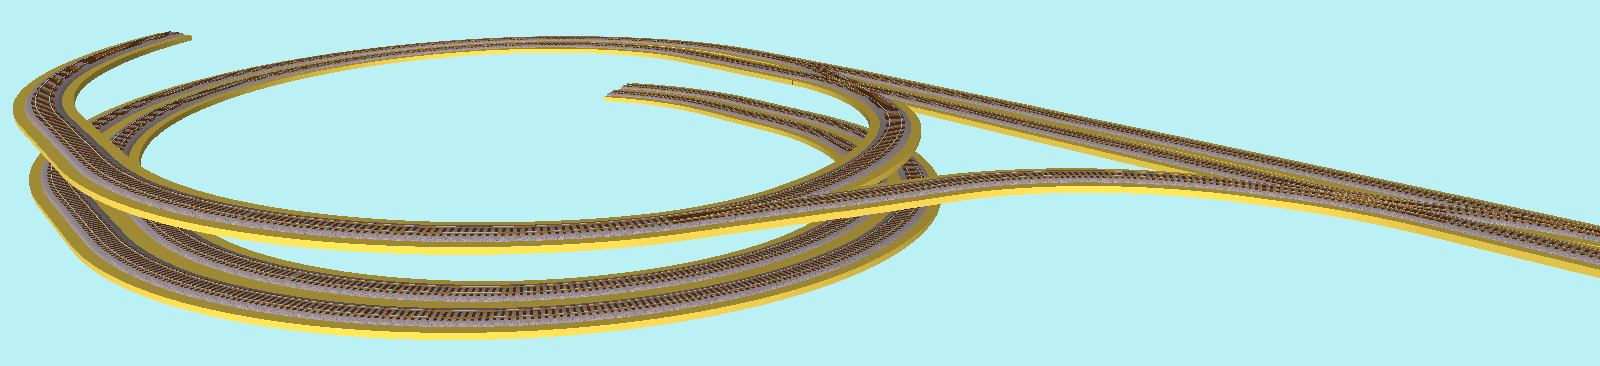 3D-ruwbouw van de aansluiting op een R3-R4 helix van-naar beneden, en tegelijkertijd een R4 helix van-naar boven (allebei met extra 188's).png